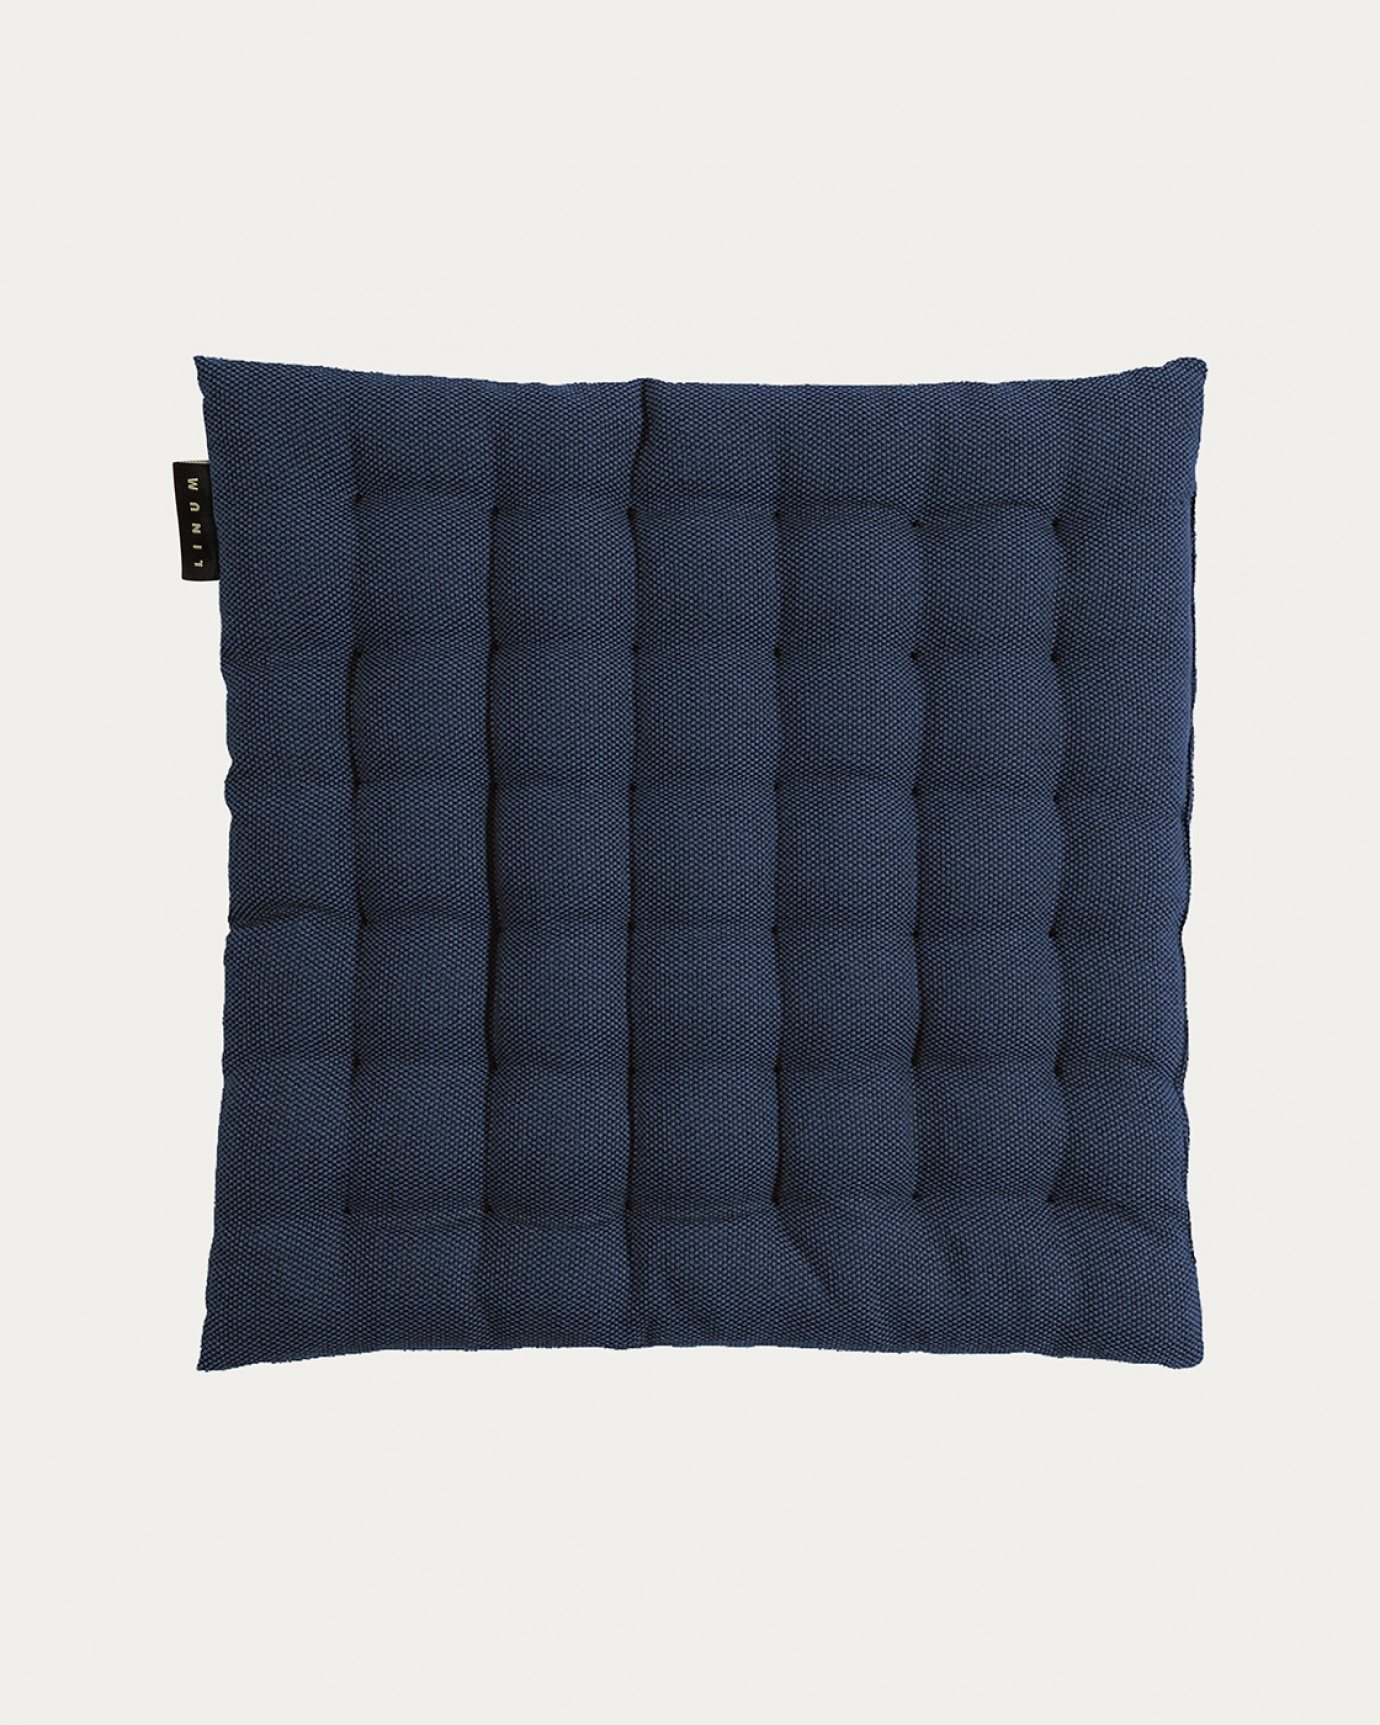 Immagine prodotto blu inchiostro PEPPER cuscini sedie di cotone con imbottitura in poliestere di LINUM DESIGN. Dimensioni 40x40 cm.